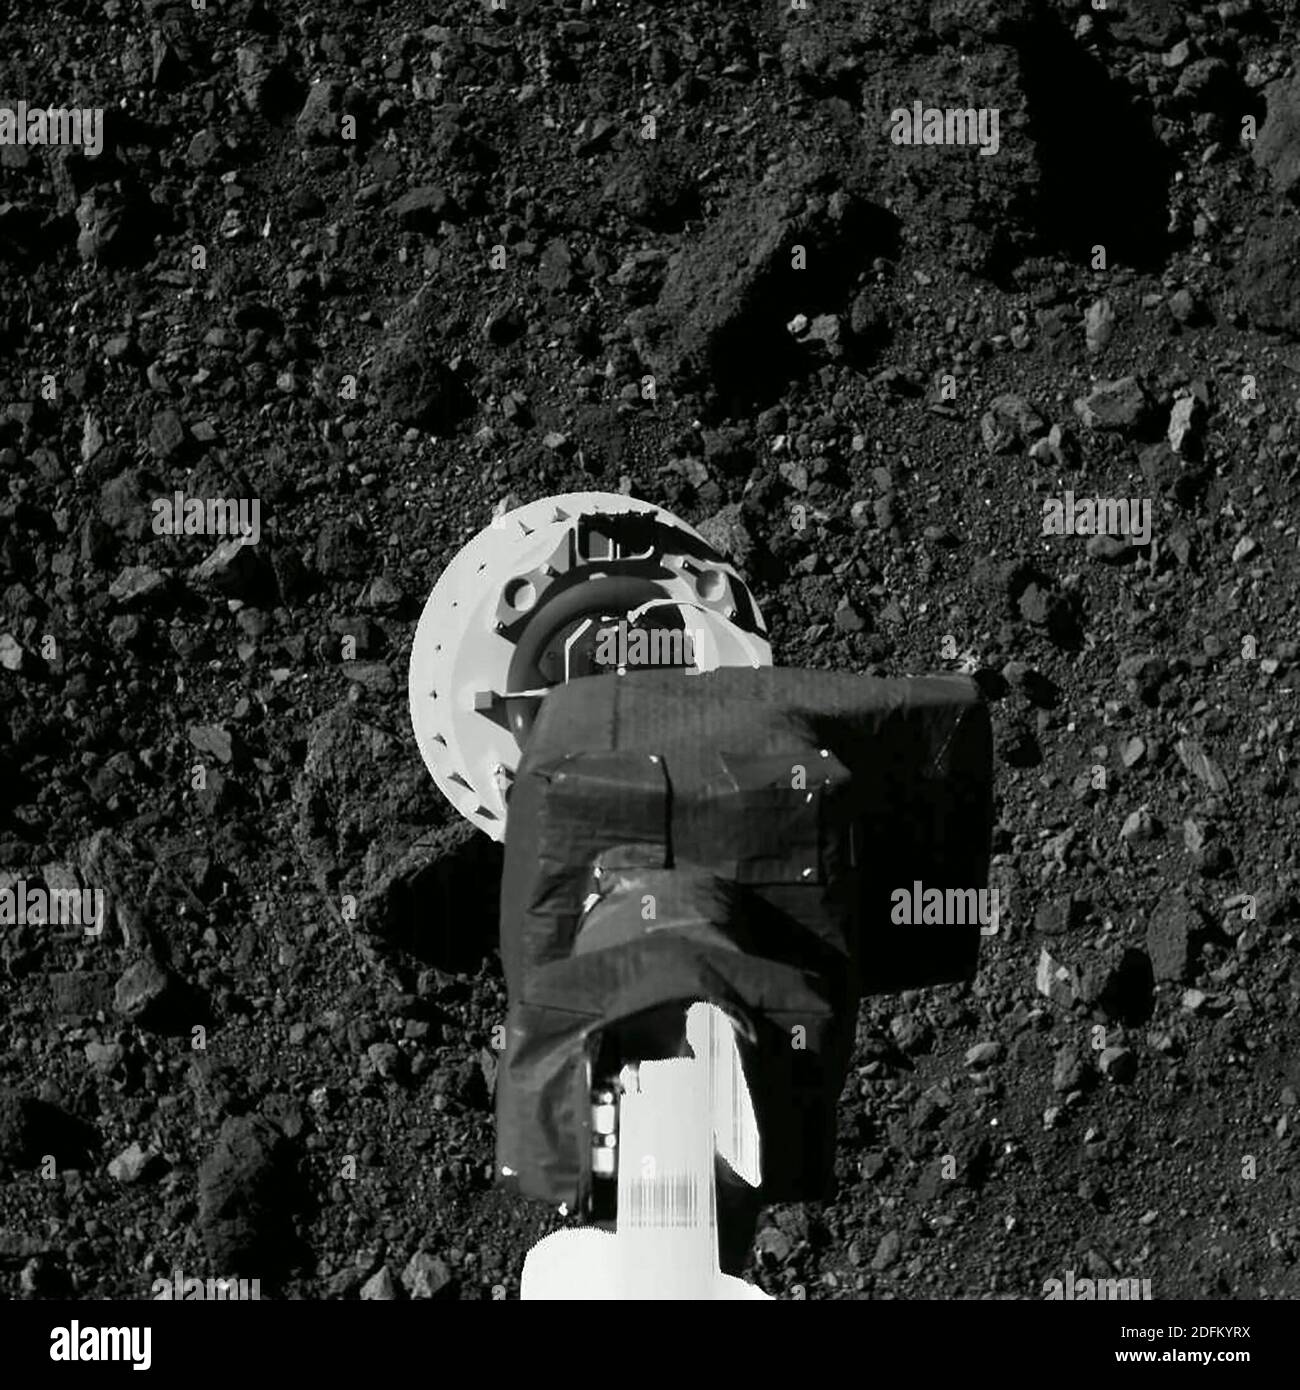 Handout-Foto einer NASA-Raumsonde verlängerte einen 11-Fuß-langen Roboterarm und stieg auf die Oberfläche eines kleinen, schutt-verstreuten Asteroiden namens Bennu Dienstag, kurz Drücken einer Sammlung Gerät in den felsigen Körper in einem mutigen Versuch, Fels-und Bodenproben für die Rückkehr zur Erde zu erfassen. Auf dem Weg nach unten, bewegte sich die OSIRIS-Rex-Raumsonde mit einer Gletscherzeit von vier Zoll pro Sekunde und musste einem hoch aufragenden, baugroßen Felshügel, der als "Mount Doom" bekannt ist, ausweichen, um die gezielte Probenentnahme nahe der Mitte eines flachen, felsbedeckten Kraters zu erreichen, der als "Nightingale" bezeichnet wird. Foto von NASA via ABACAPRE Stockfoto